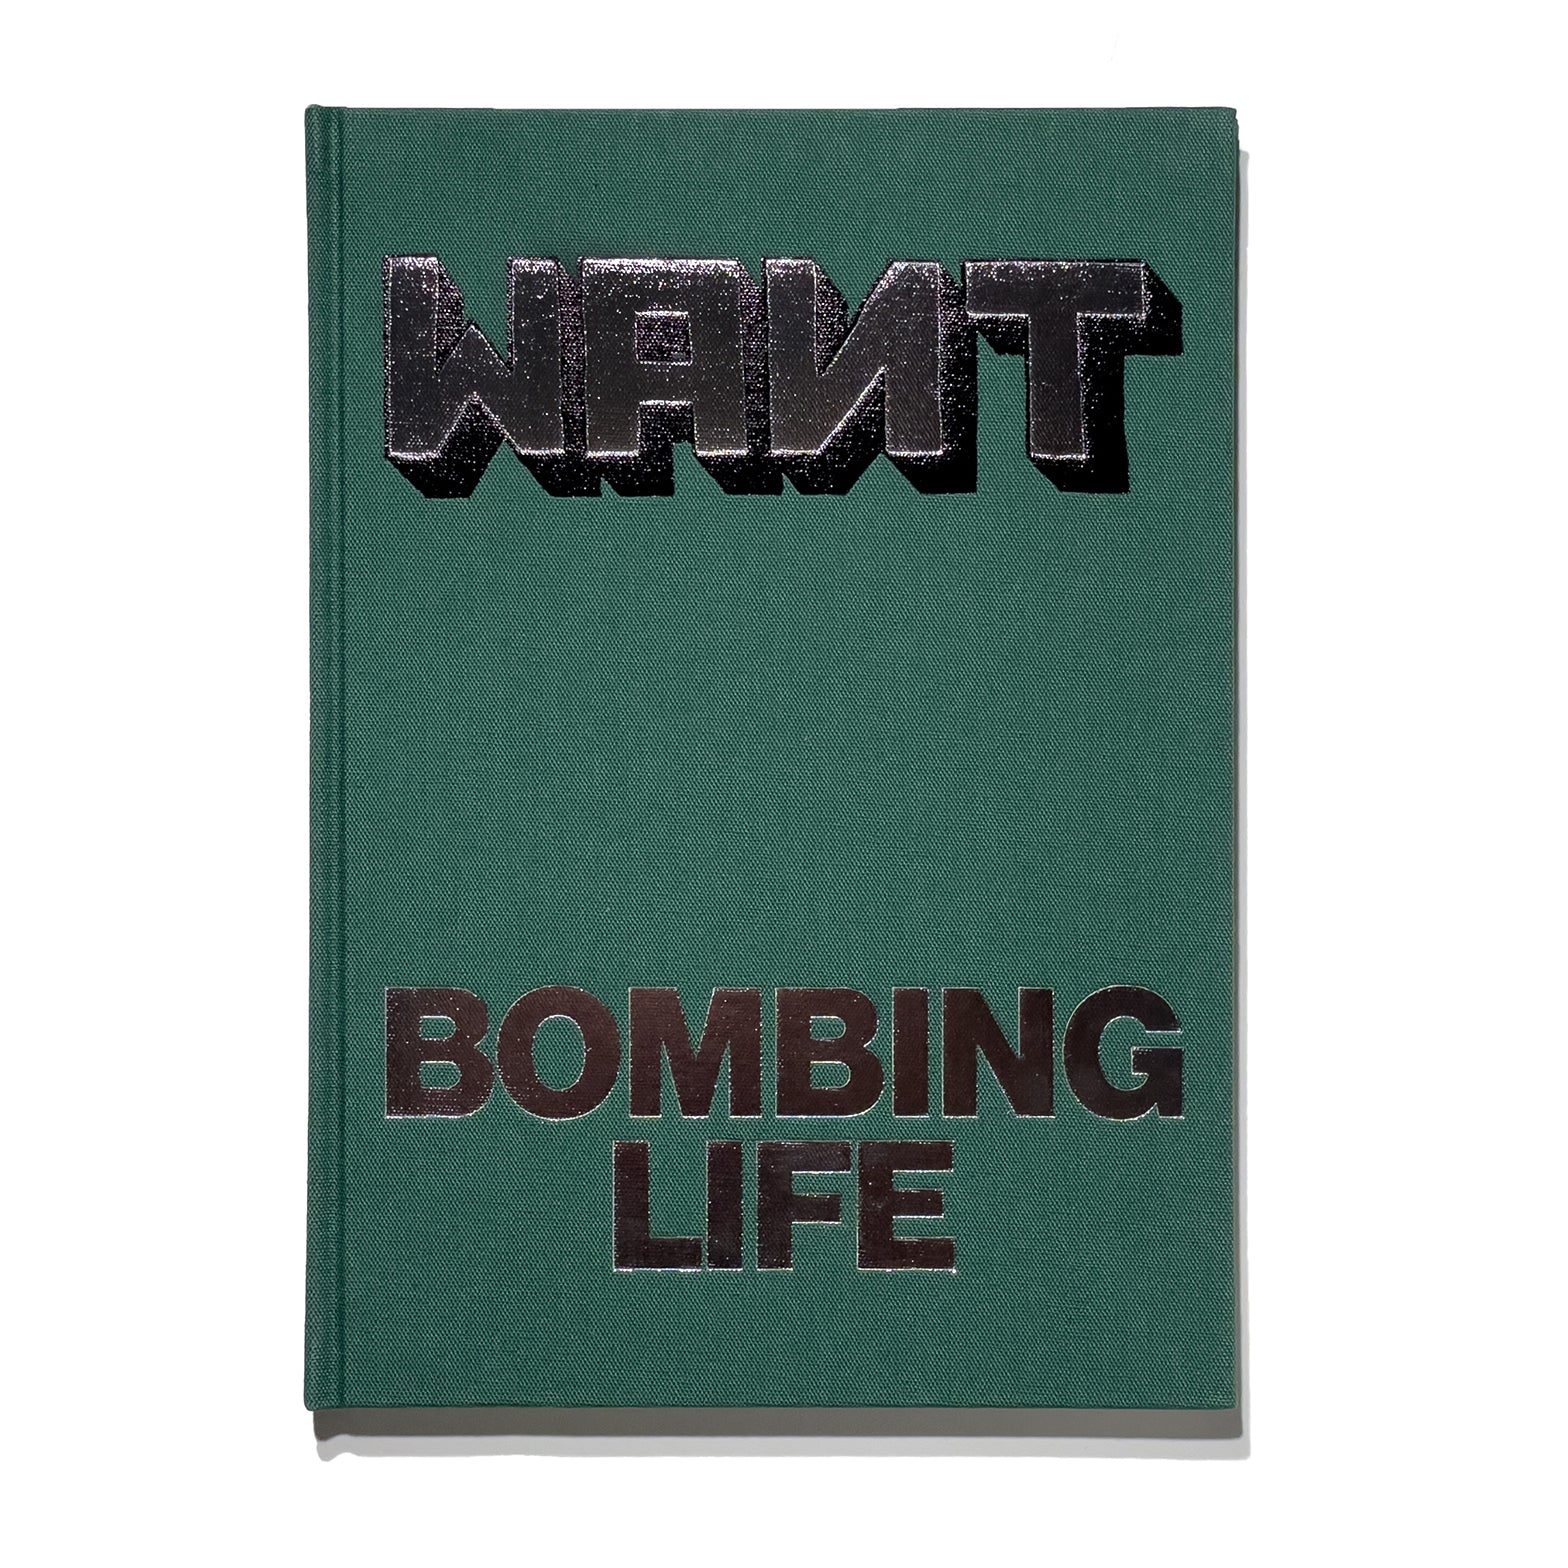 WANTO – Bombing Life - Artillery Worldwide